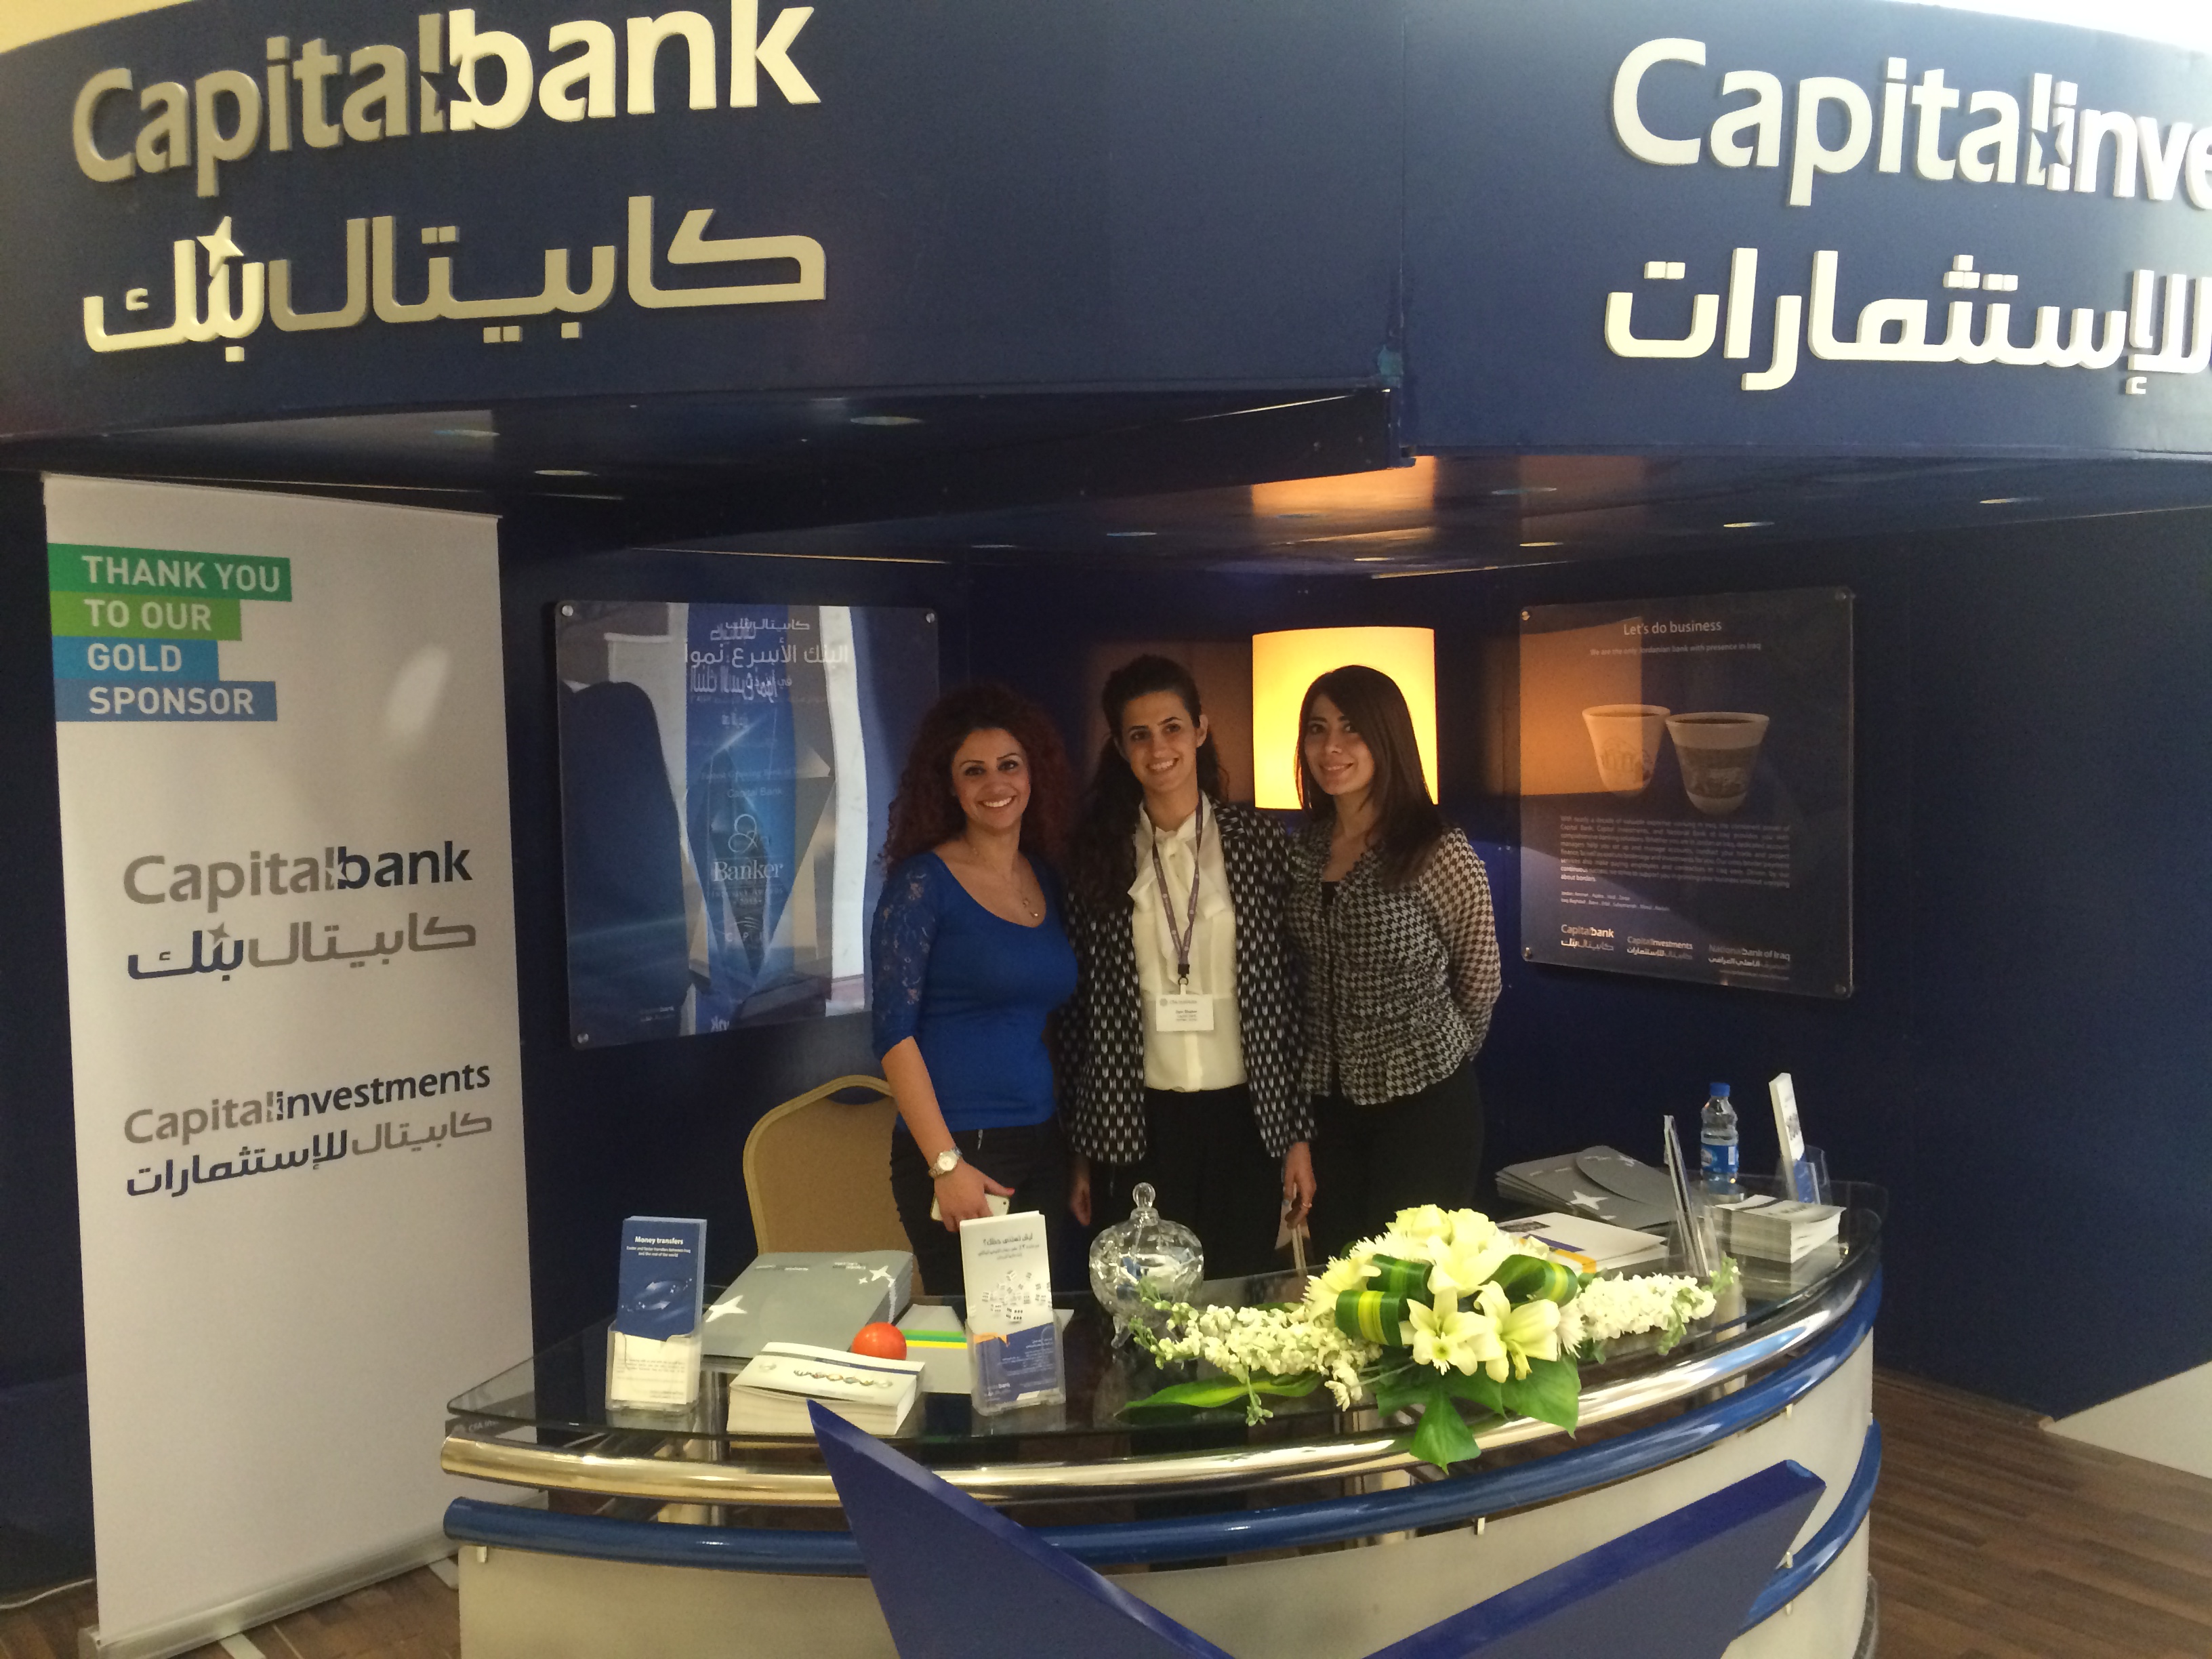 كابيتال بنك الراعي الذهبي لمؤتمر الاستثمار في الشرق الأوسط  2014